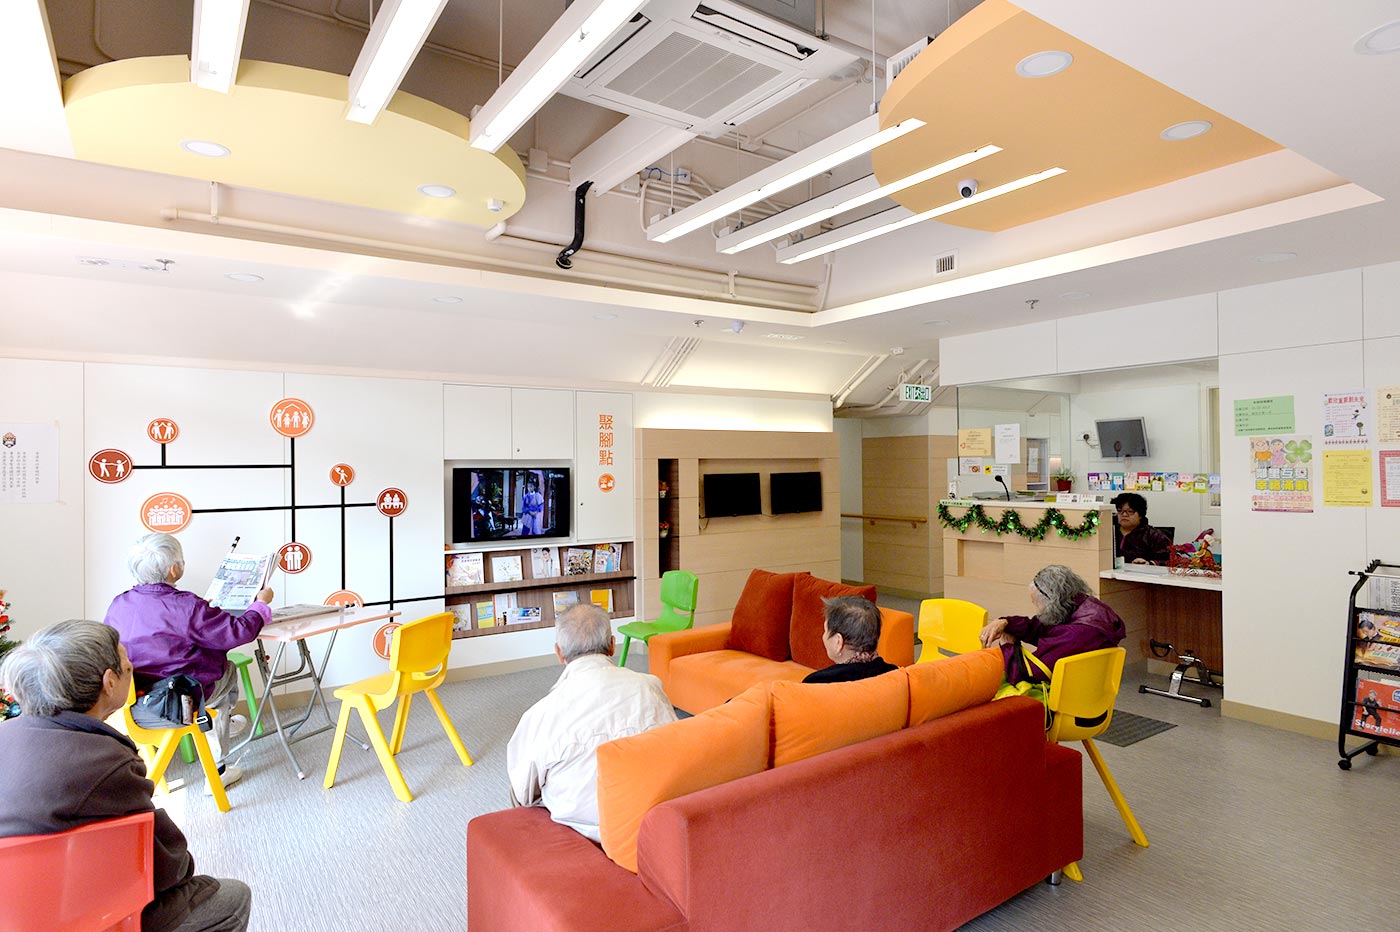 An elderly centre designed by Robert as project development director of the Sheng Kung Hui Welfare Council